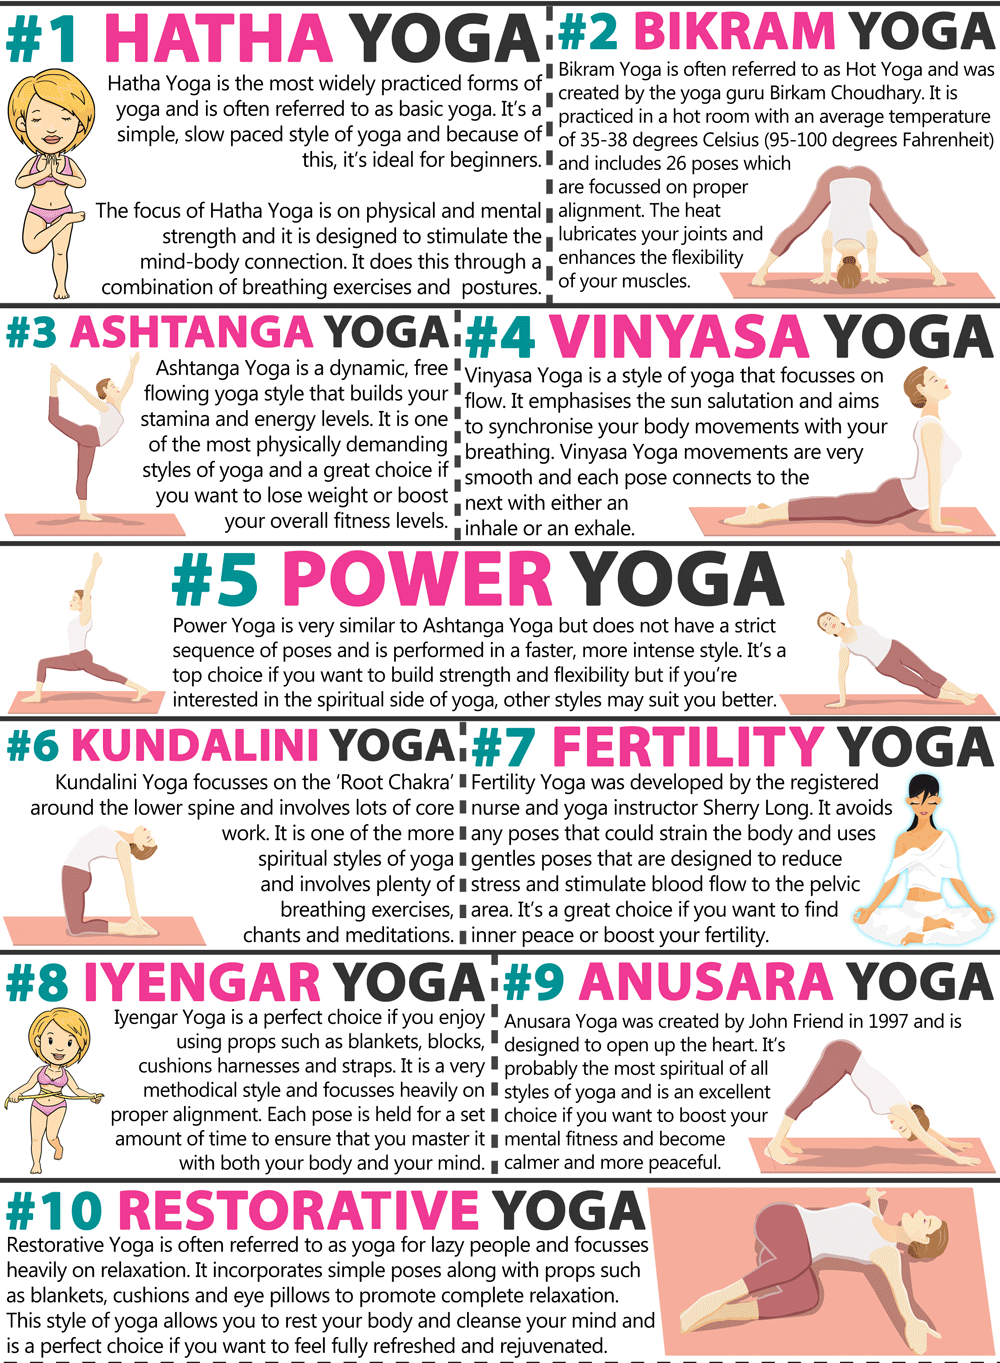 https://www.beinspiredfitnessandyoga.com/wp-content/uploads/2018/08/ten-types-of-yoga.png